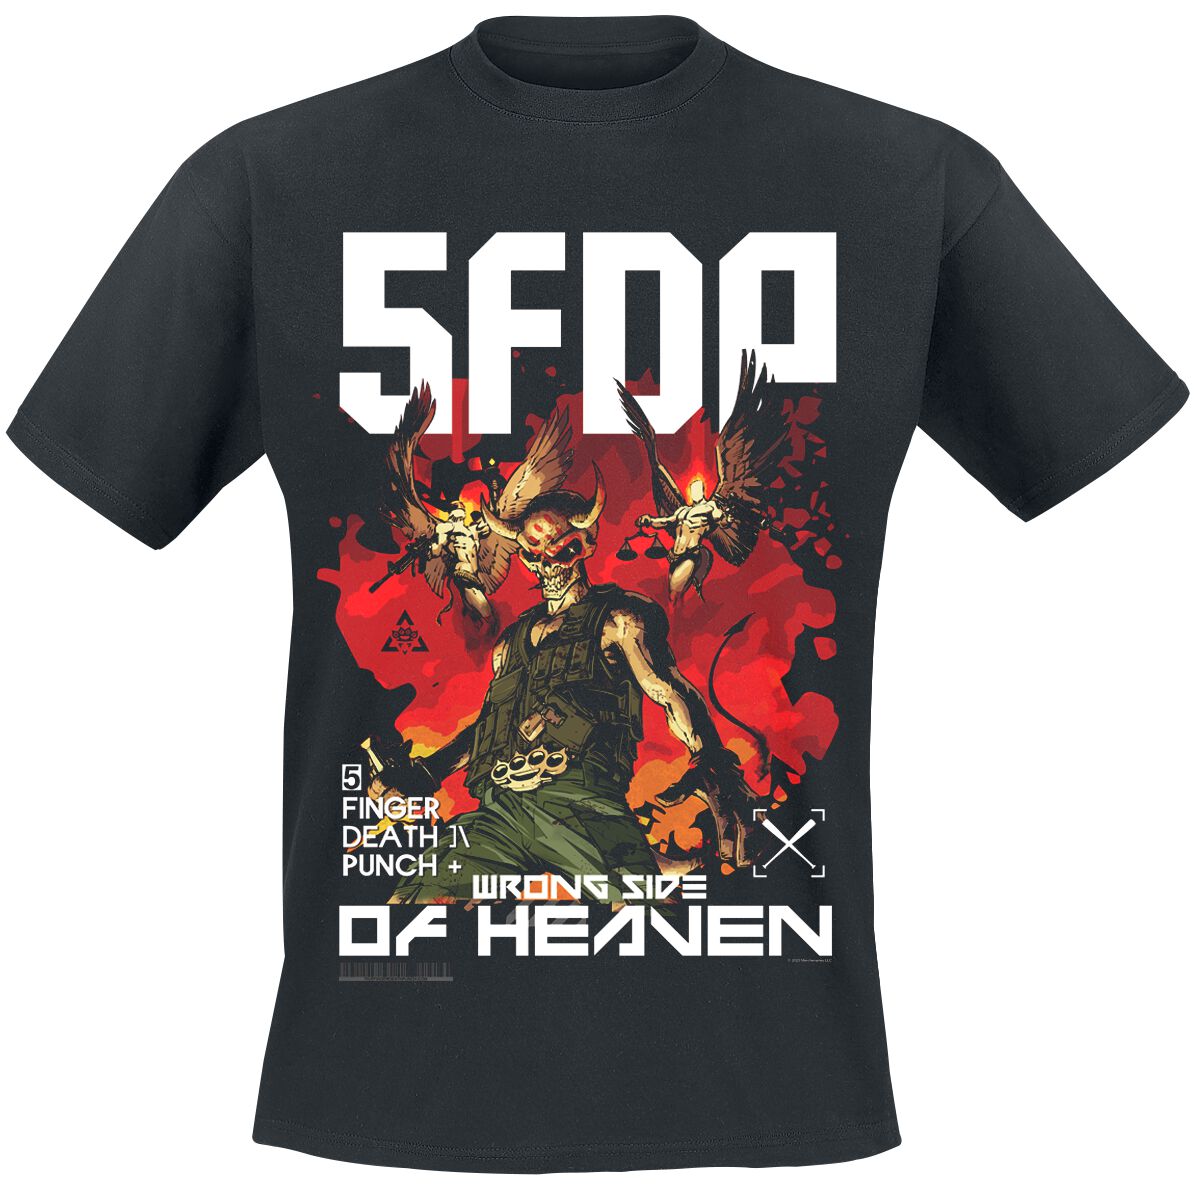 Five Finger Death Punch T-Shirt - Anniversary Wrong Side Of Heaven - S bis 3XL - für Männer - Größe L - schwarz  - Lizenziertes Merchandise!